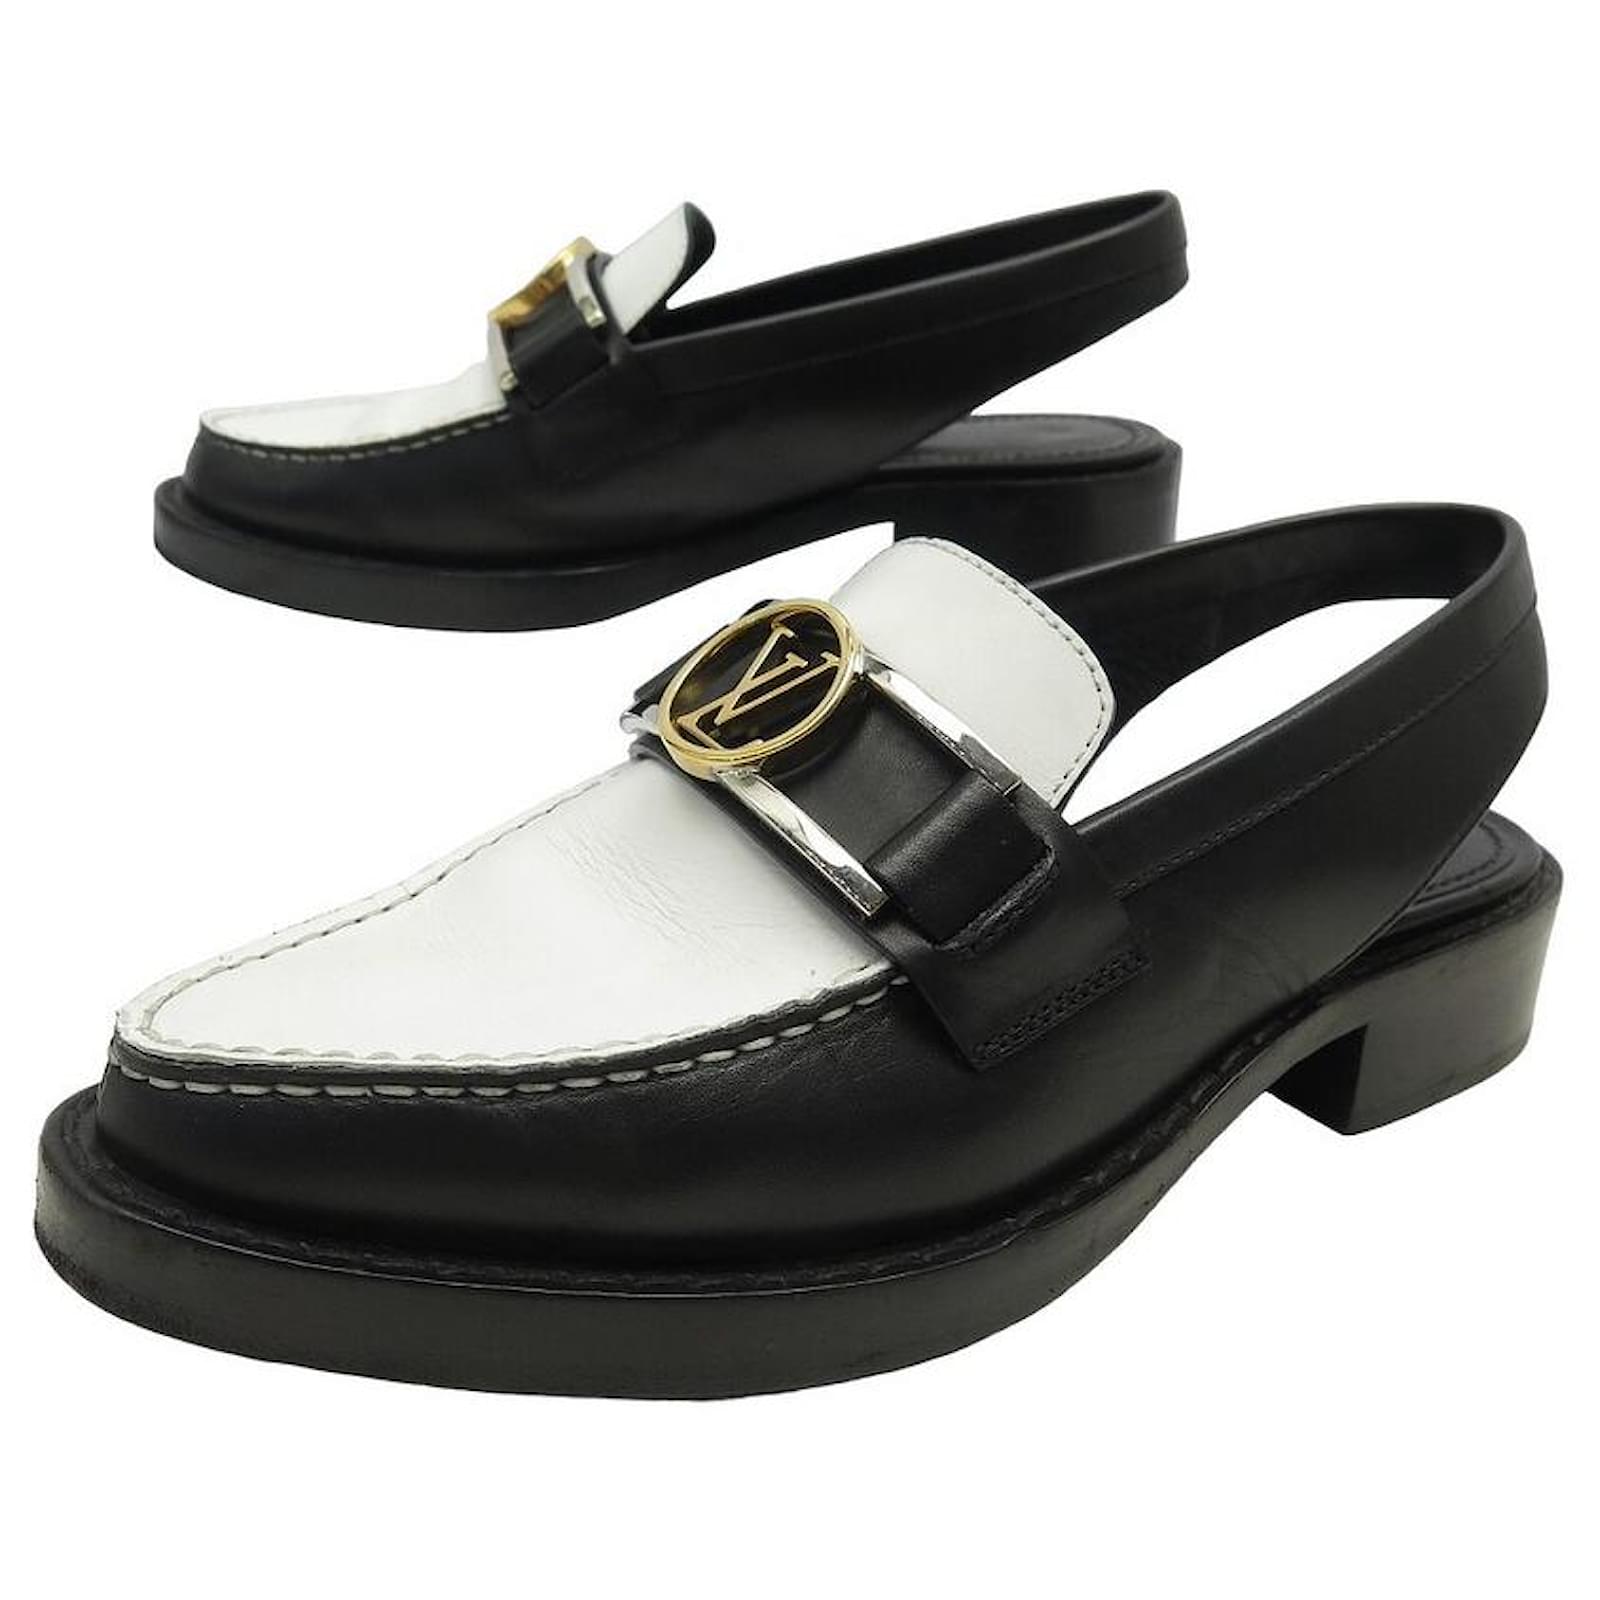 Louis Vuitton Academy flat sandals